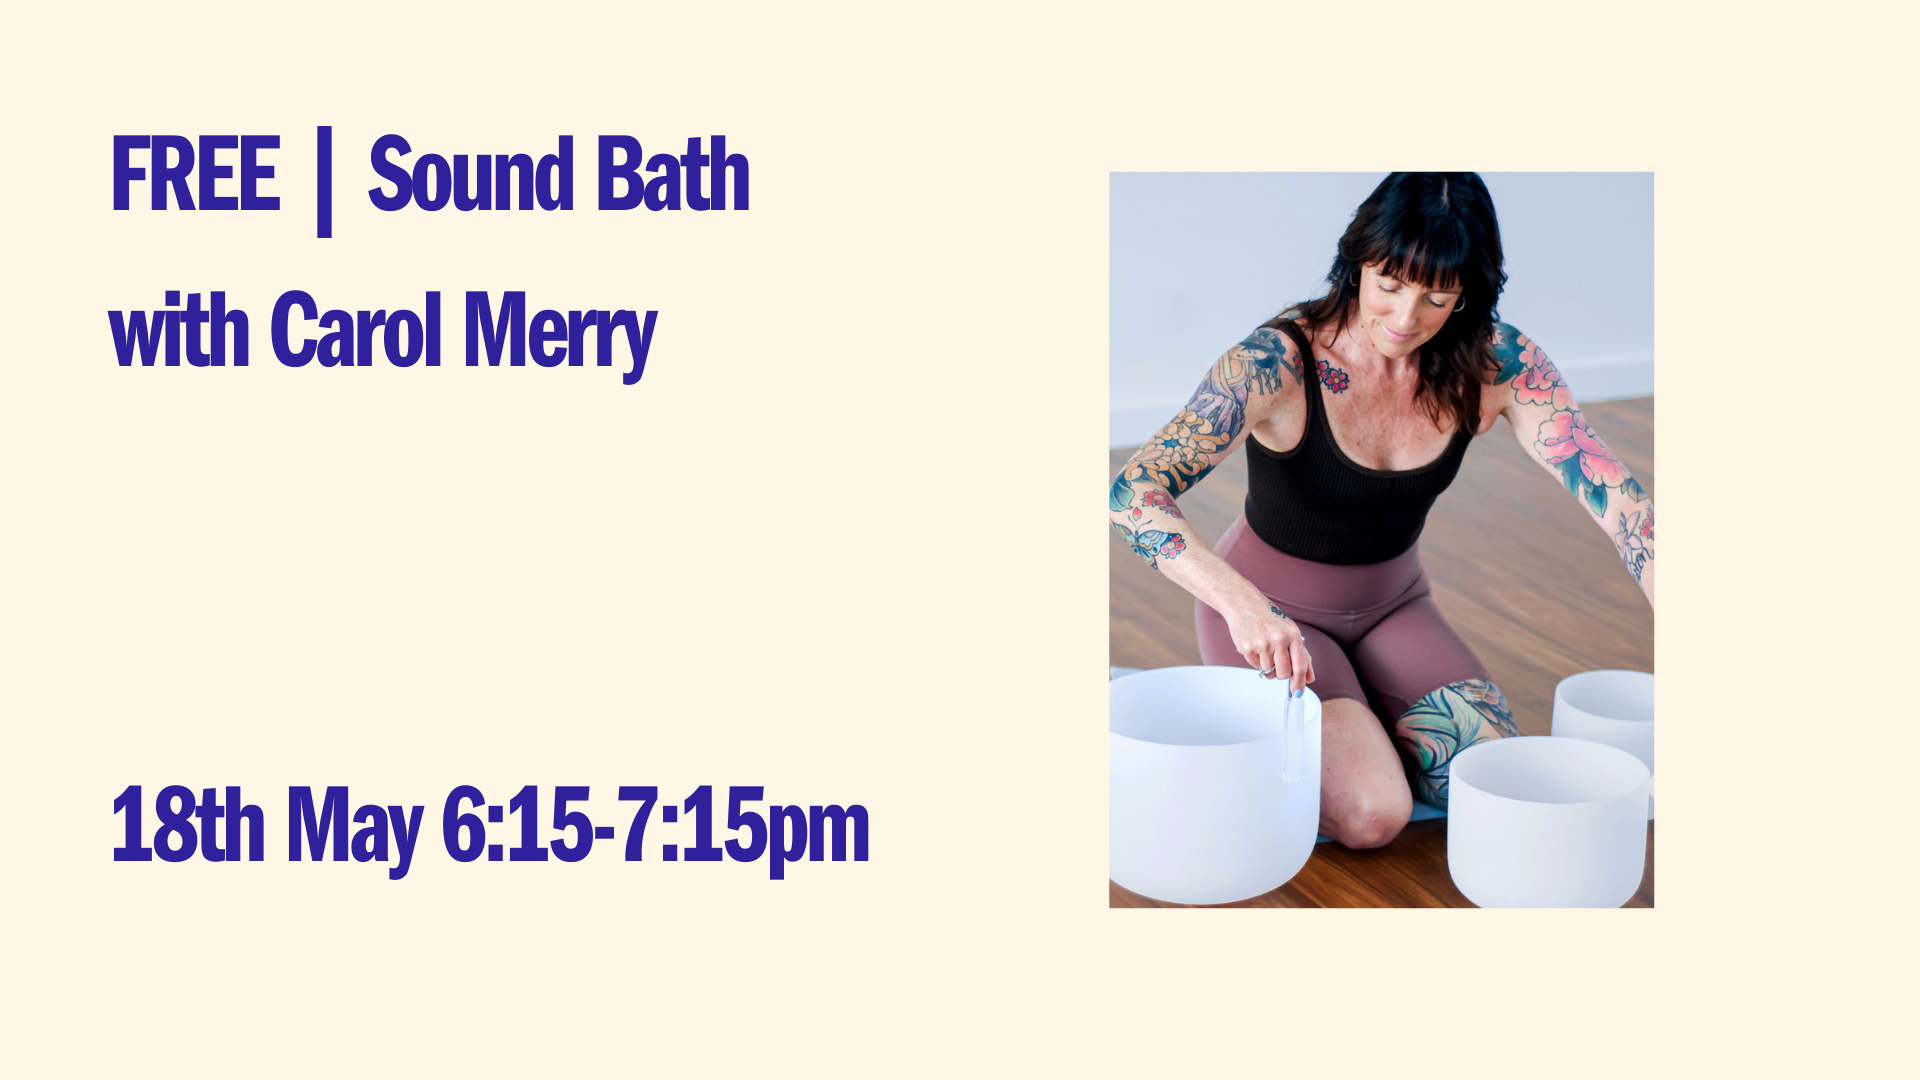 FREE | Sound Bath with Carol Merry - May 18th